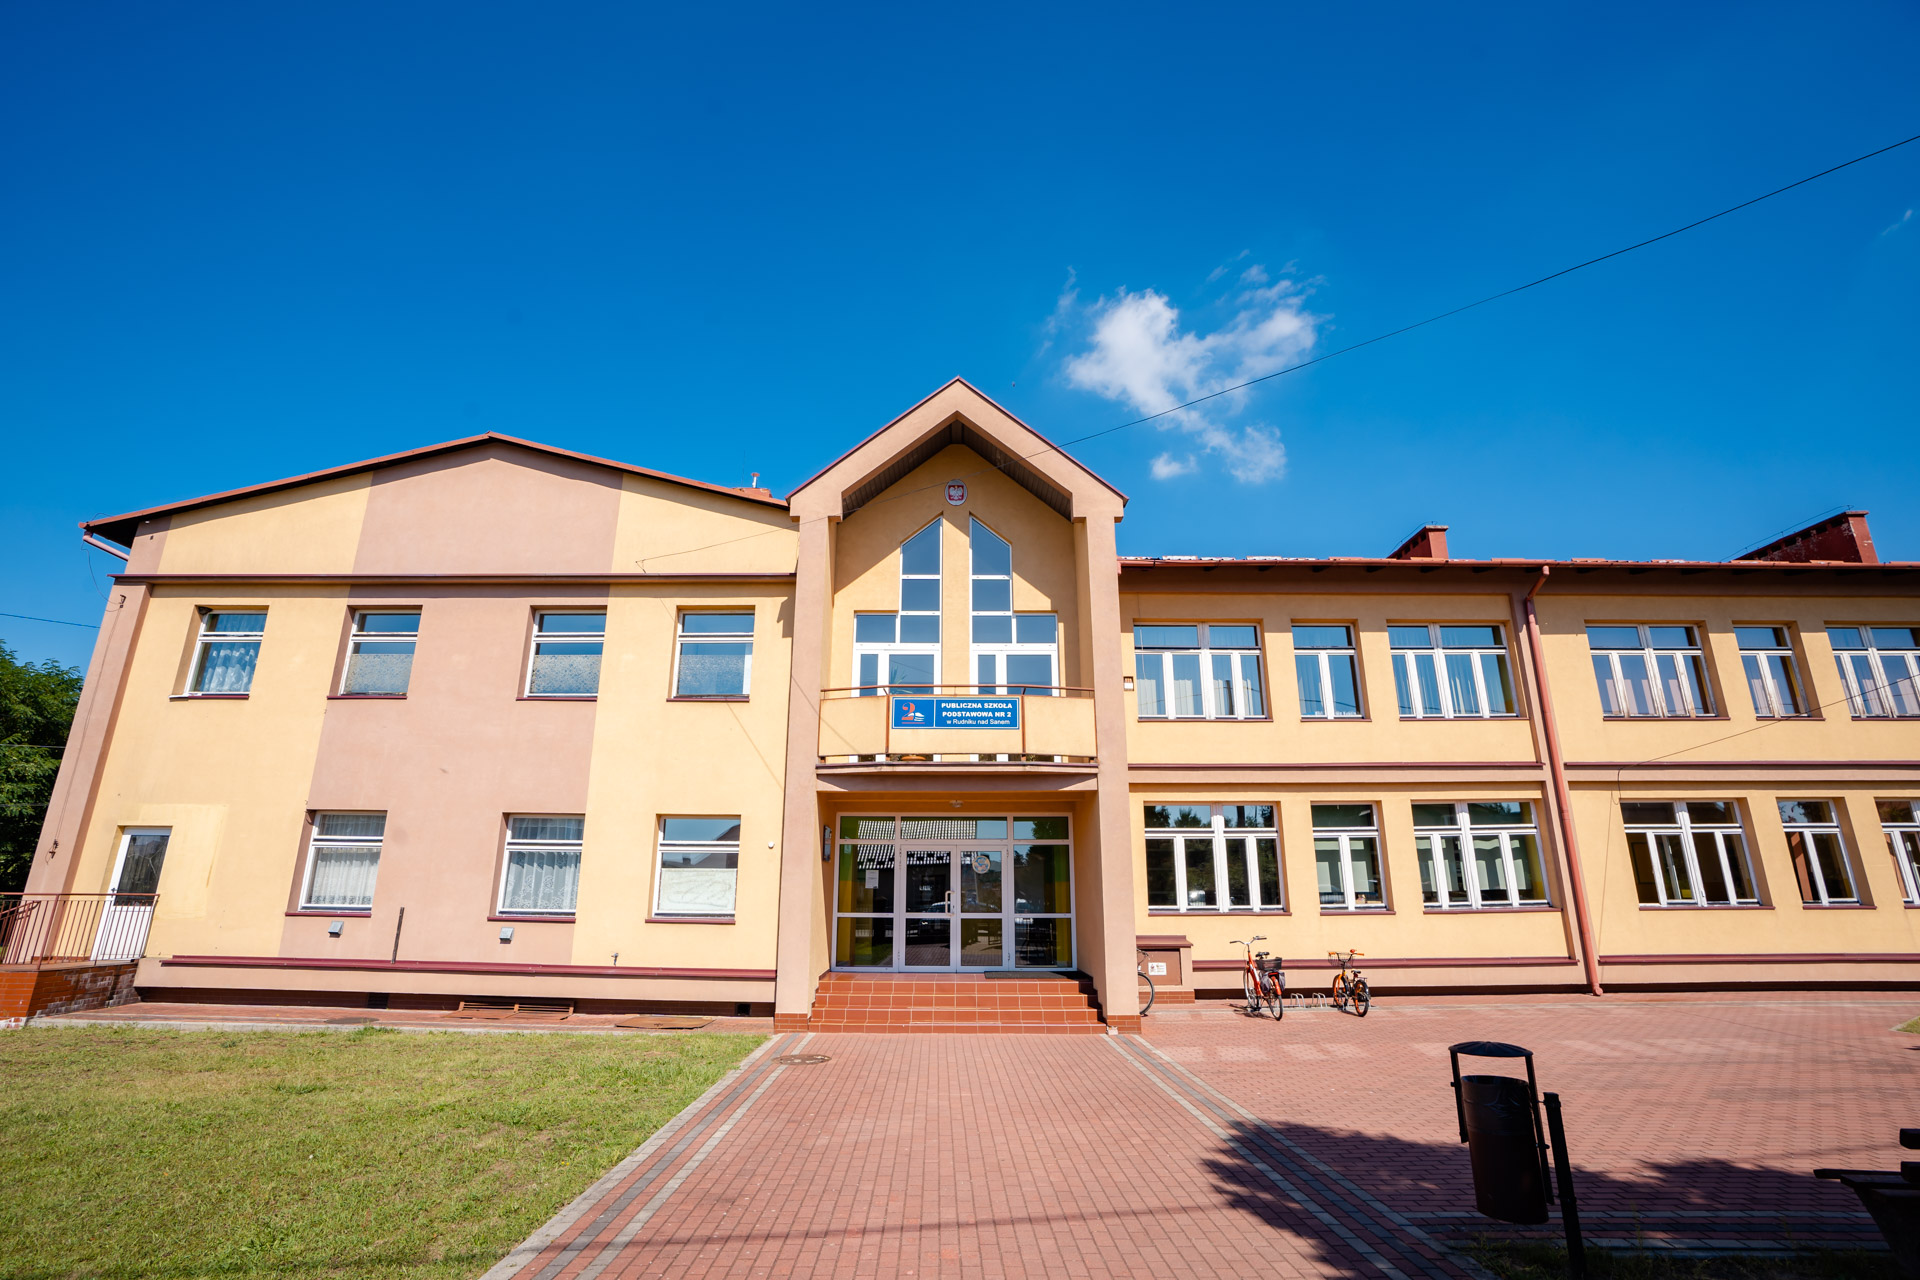 Jednopiętrowy budynek szkoły, na środku przeszklone wejście. Elewacja koloru różowego i żółtego